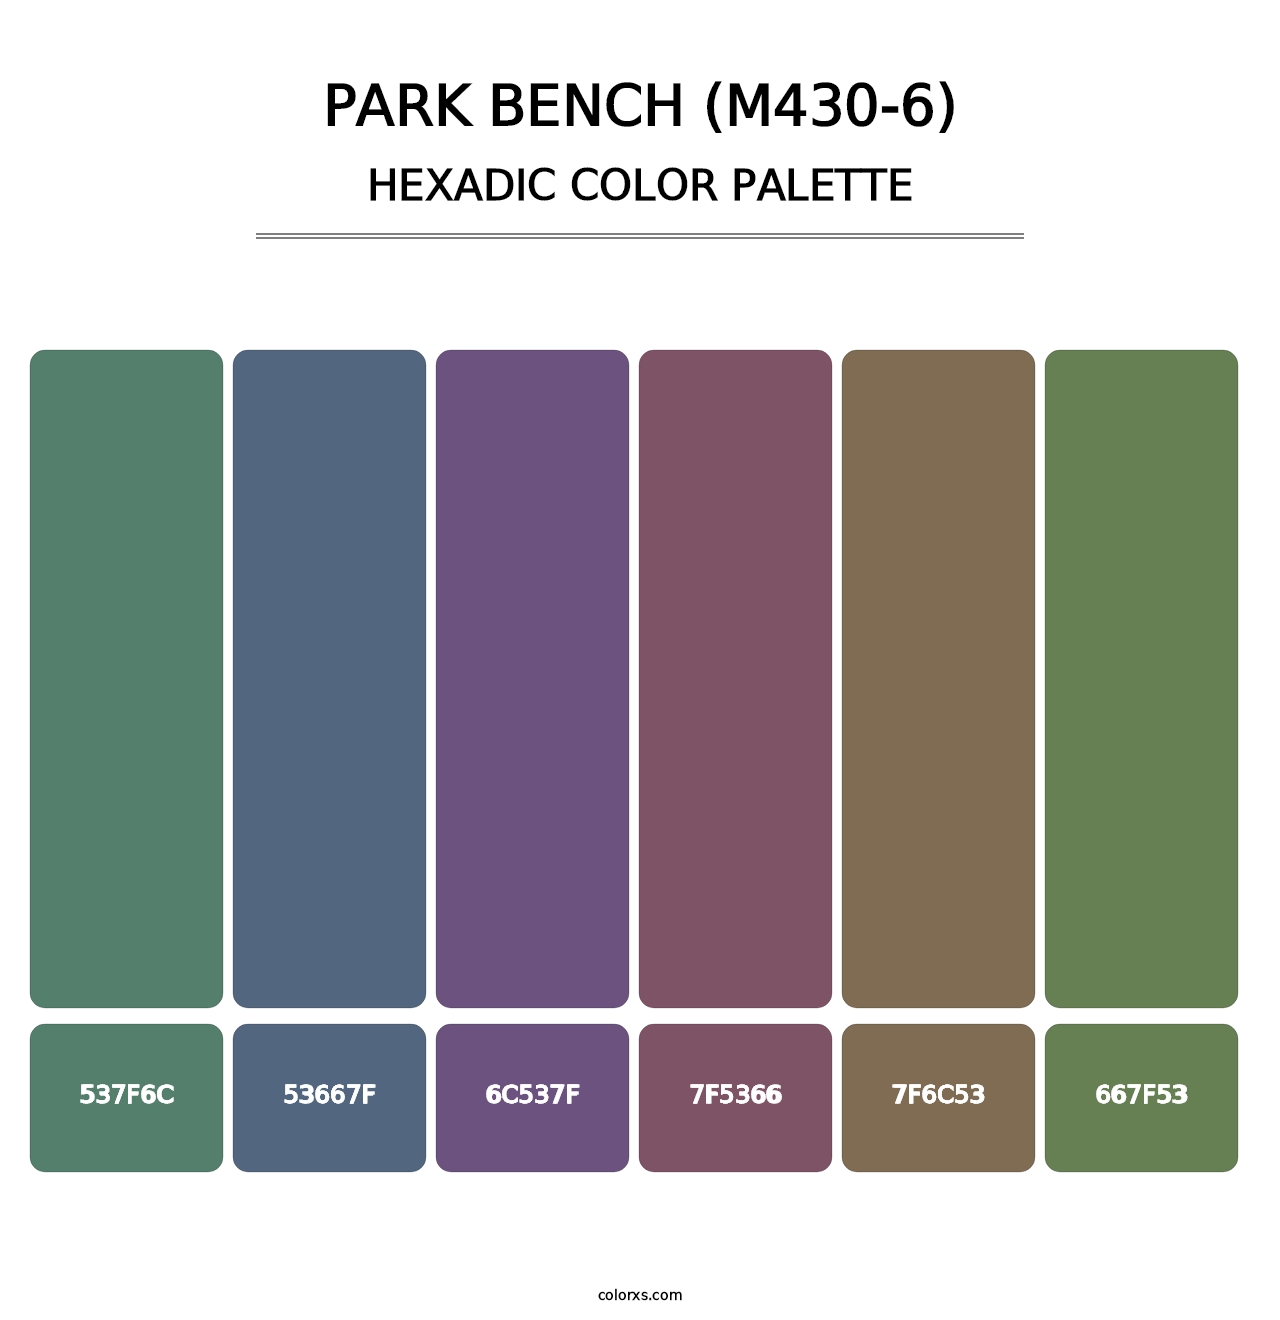 Park Bench (M430-6) - Hexadic Color Palette